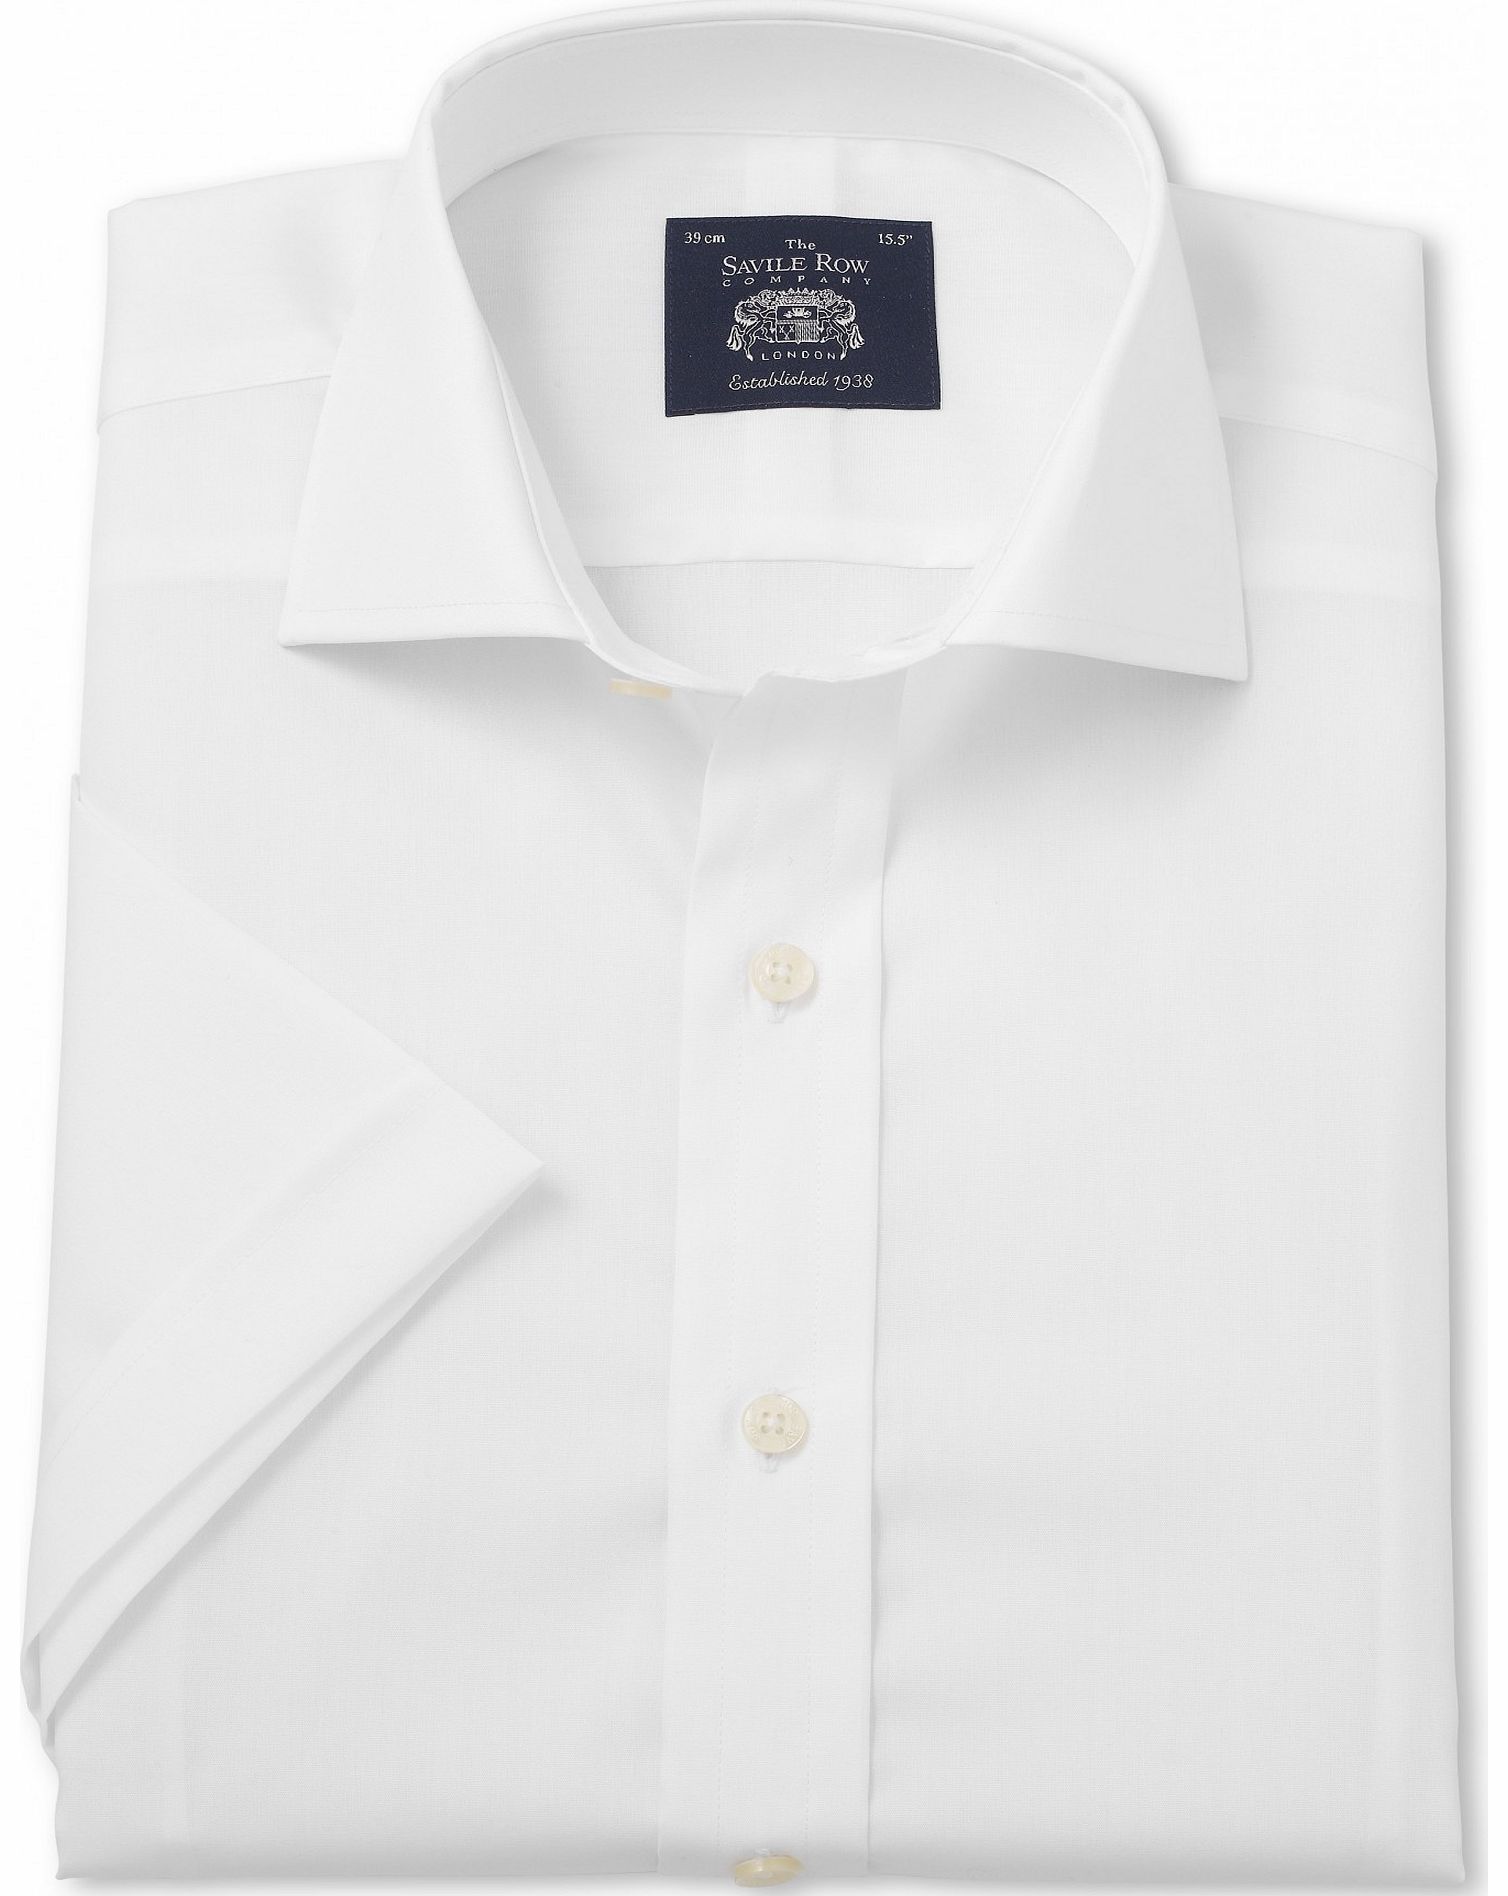 Savile Row Company White Slim Fit Short Sleeve Shirt 18`` Short